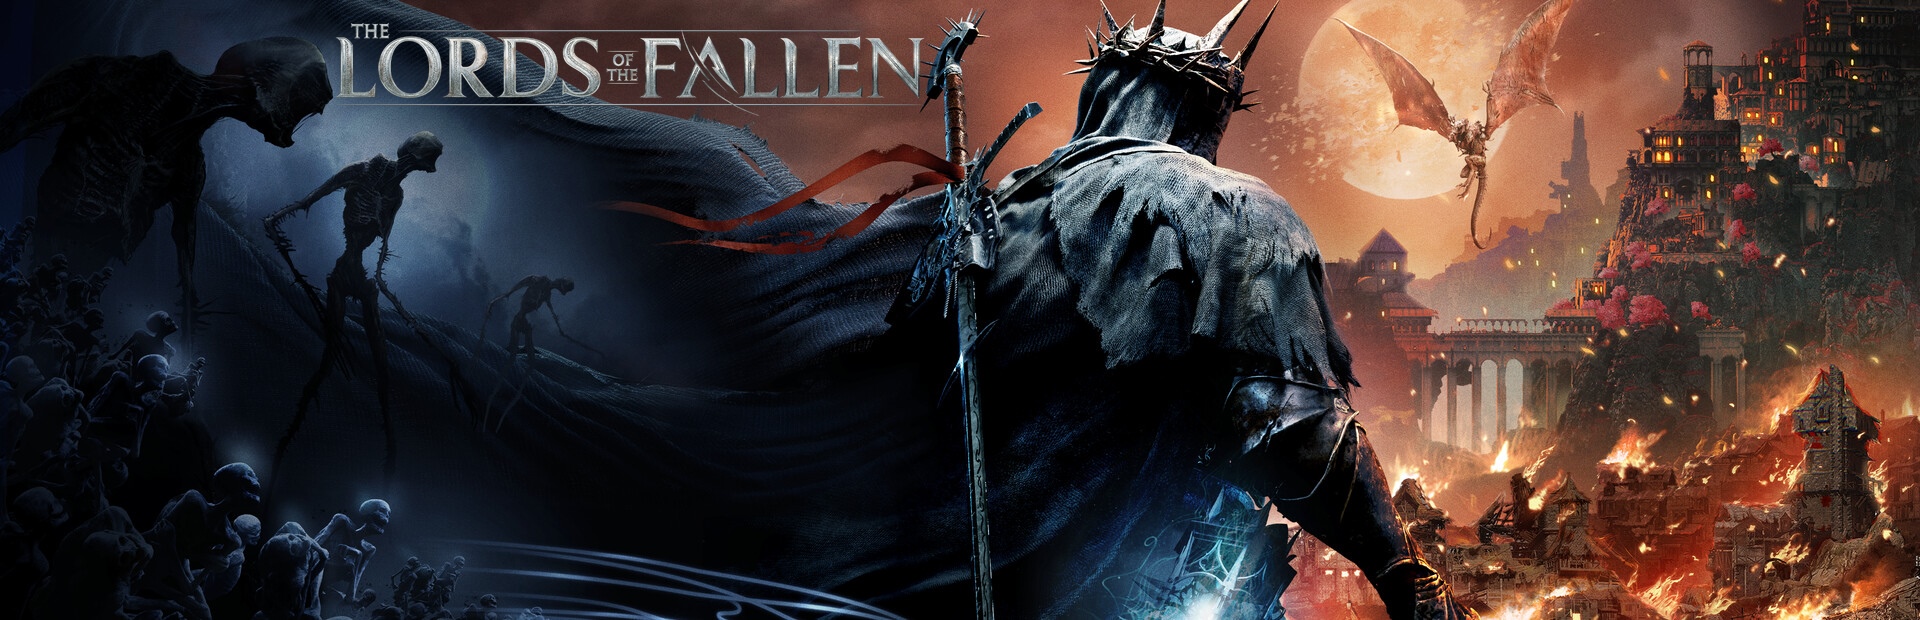 دانلود بازی The Lords of the Fallen برای کامپیوتر | گیمباتو